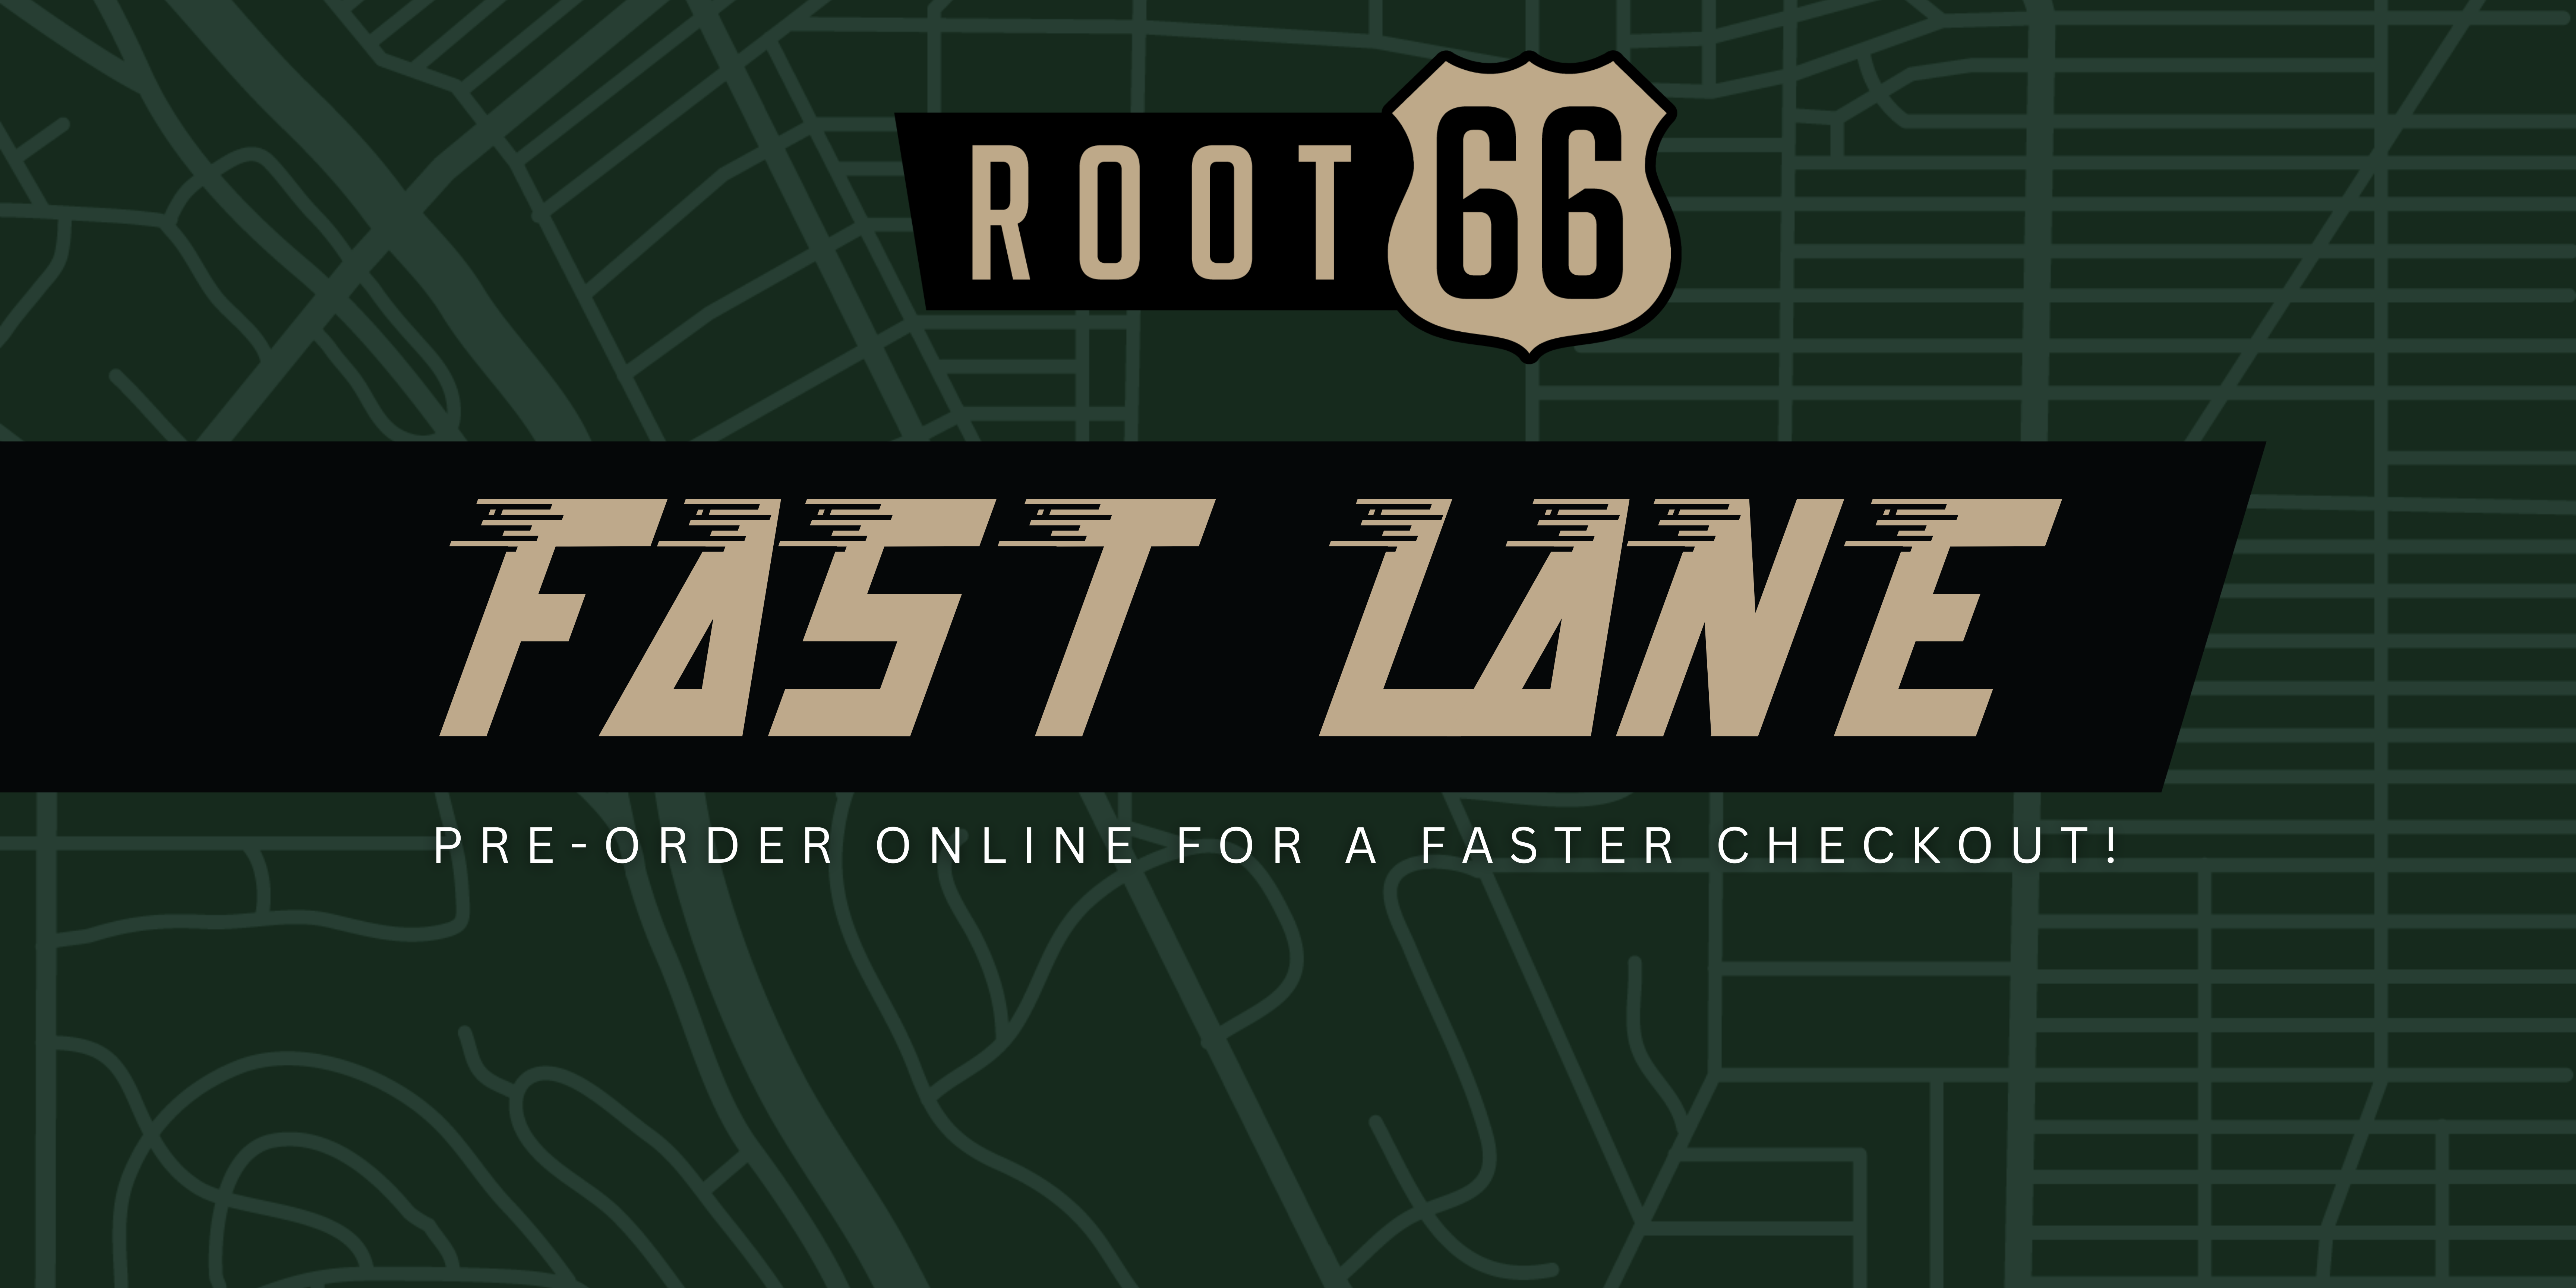 Fast Lane Checkout